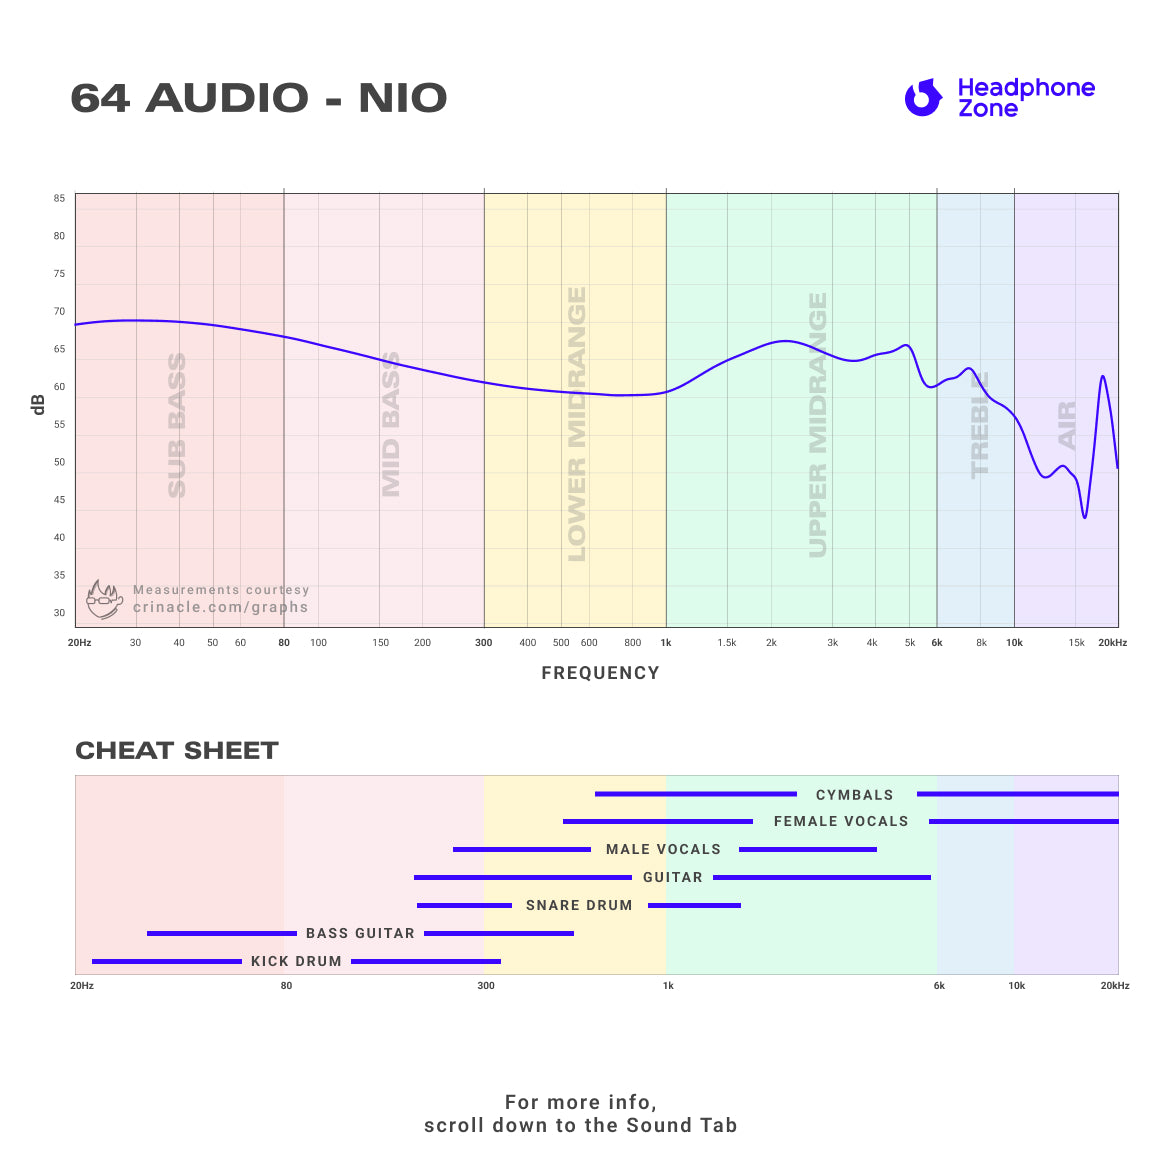 64 Audio - Nio